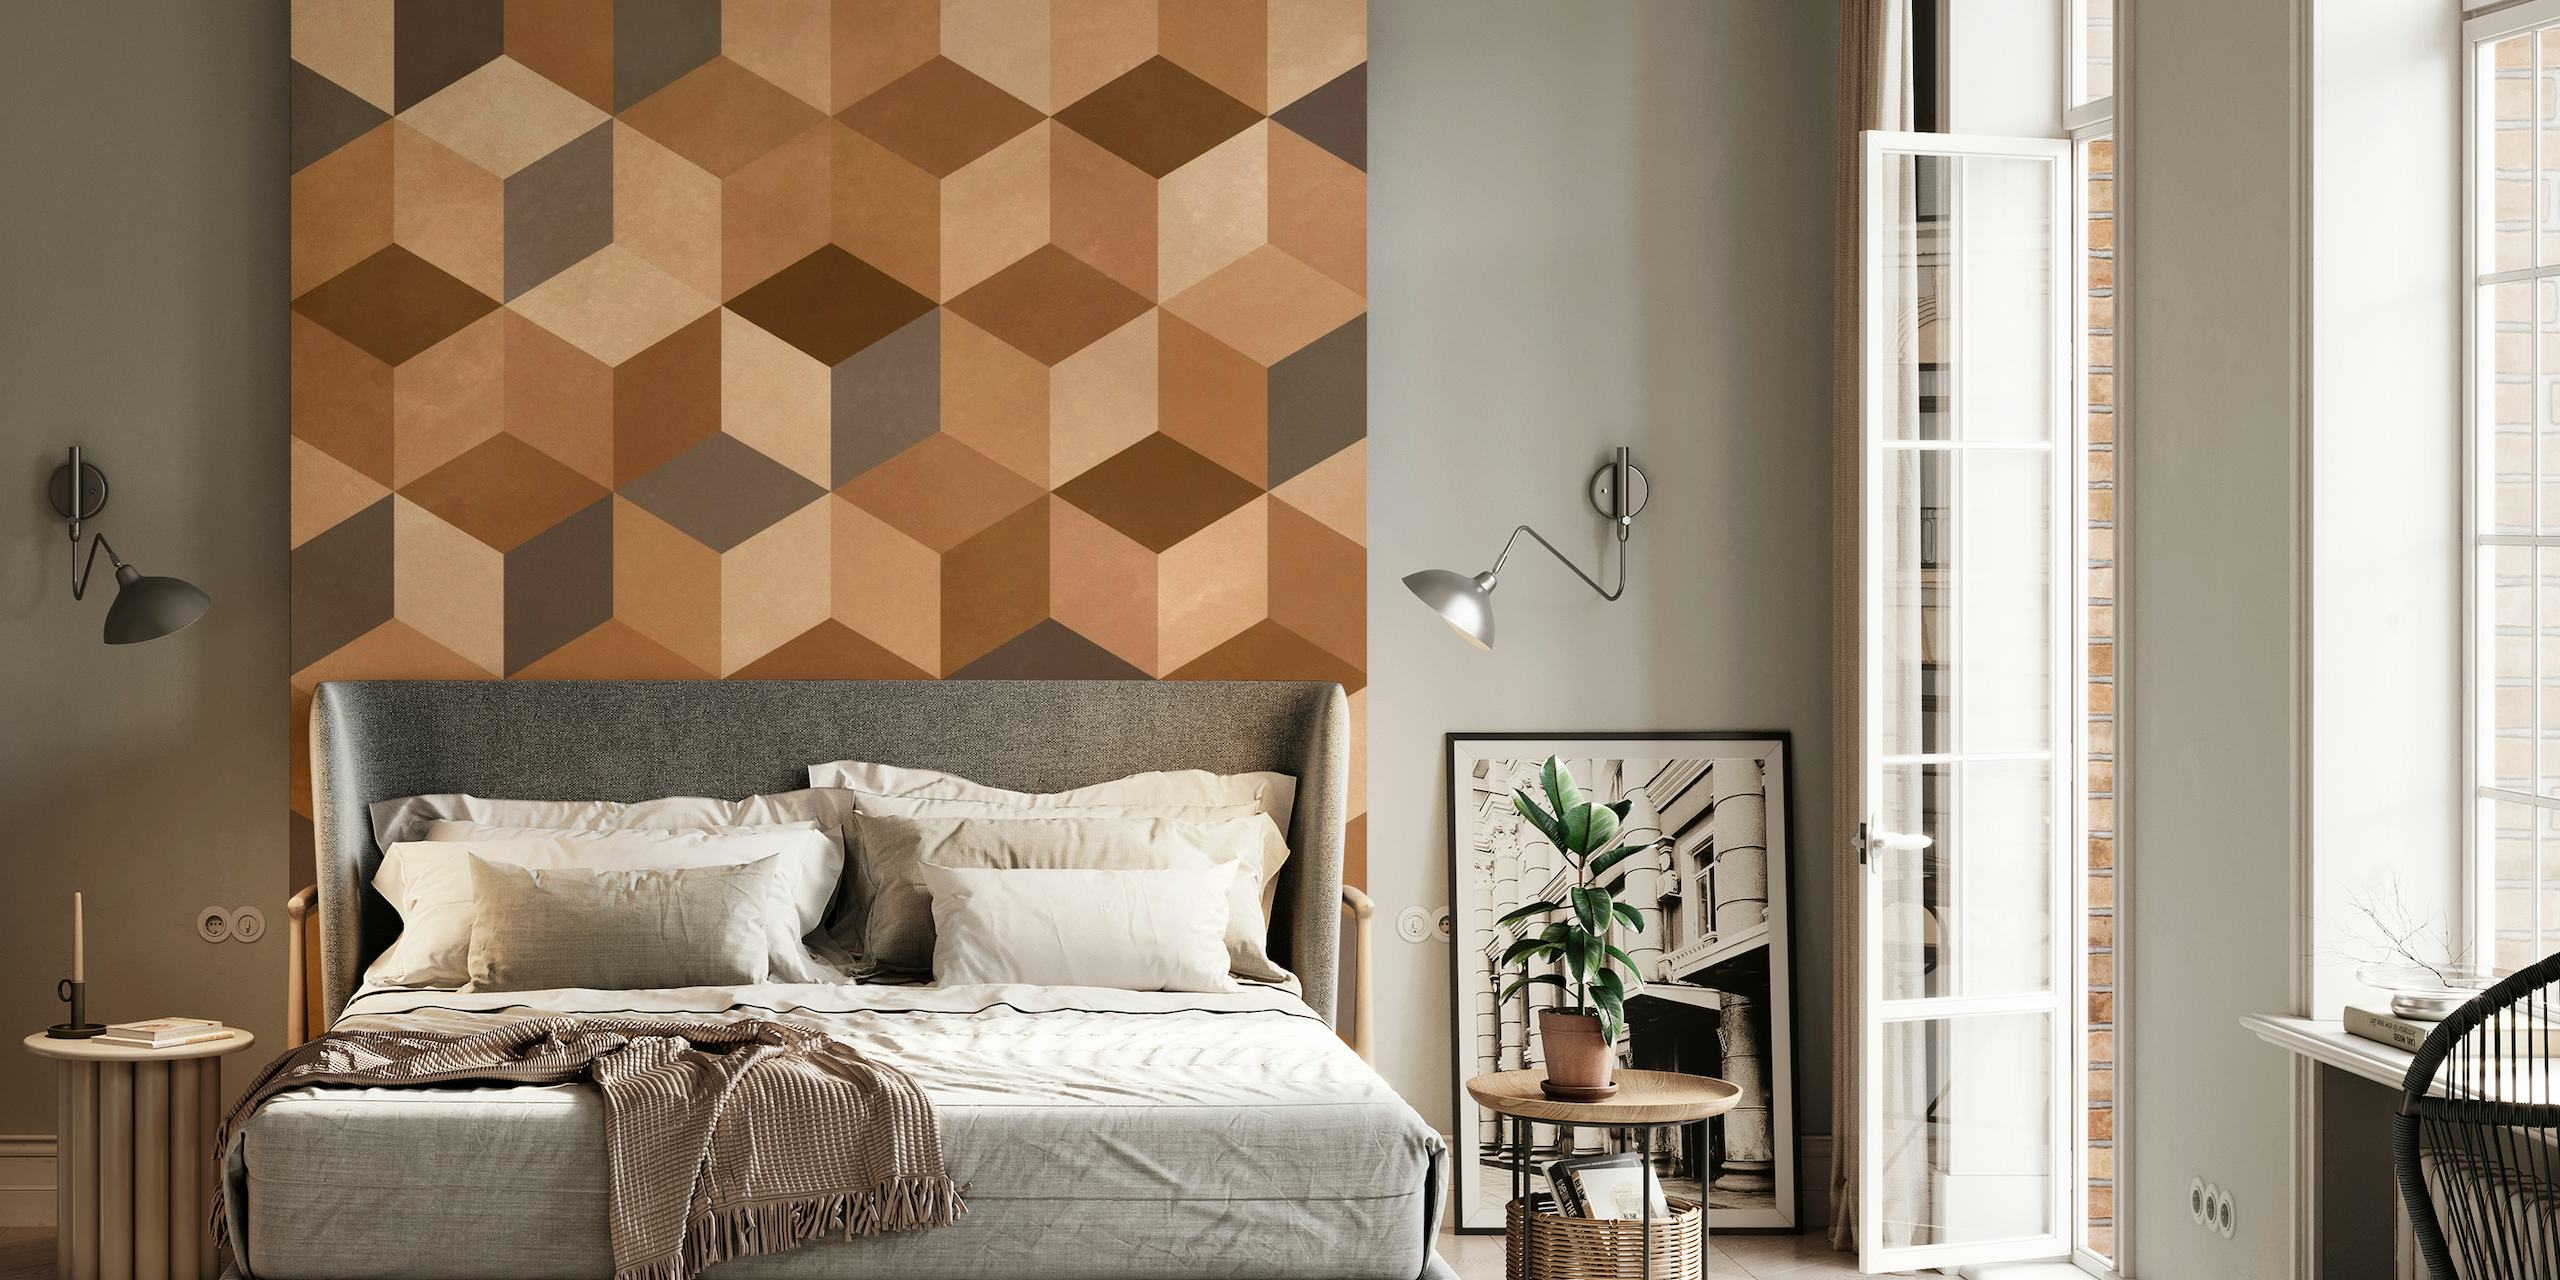 Apstraktne geometrijske kocke smeđih tonova tvore zidni mural s 3D efektom